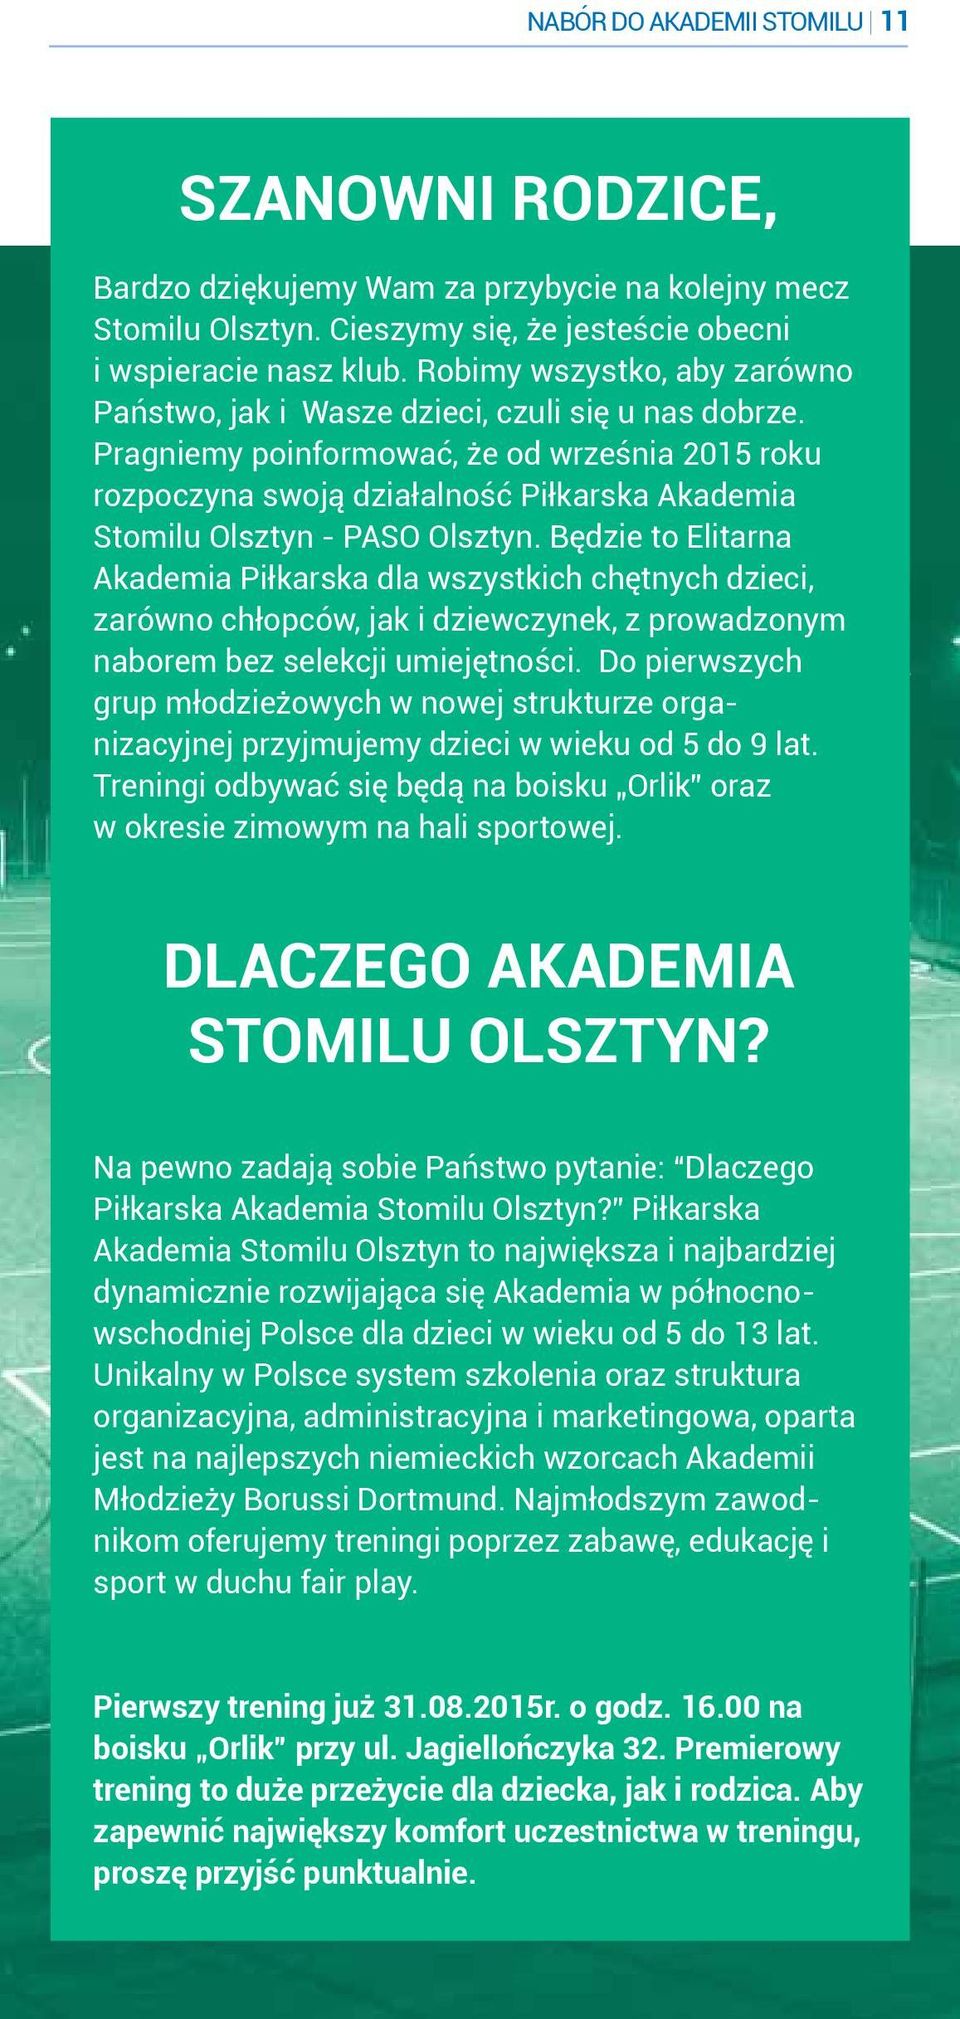 Pragniemy poinformować, że od września 2015 roku rozpoczyna swoją działalność Piłkarska Akademia Stomilu Olsztyn - PASO Olsztyn.